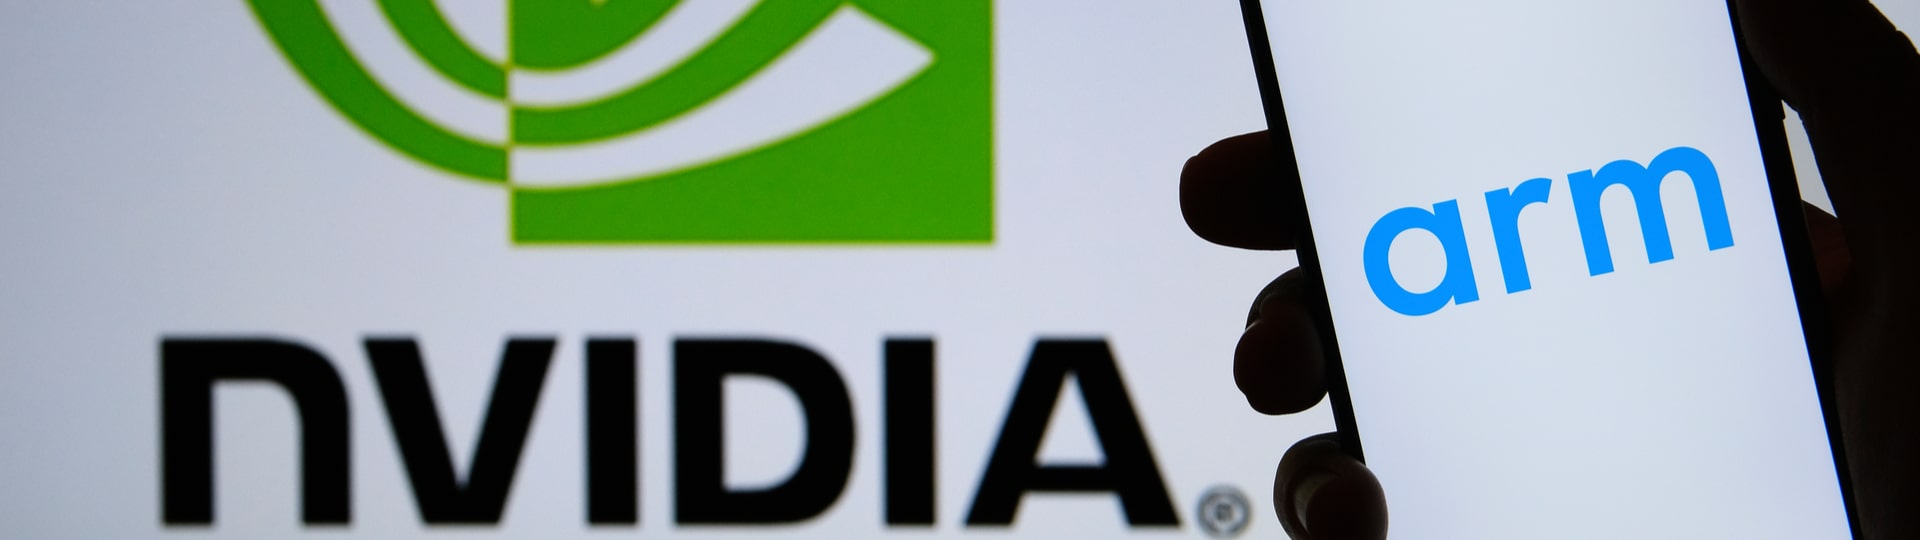 Nvidia nabídla Evropské komisi ústupky, aby mohla převzít rivala Arm